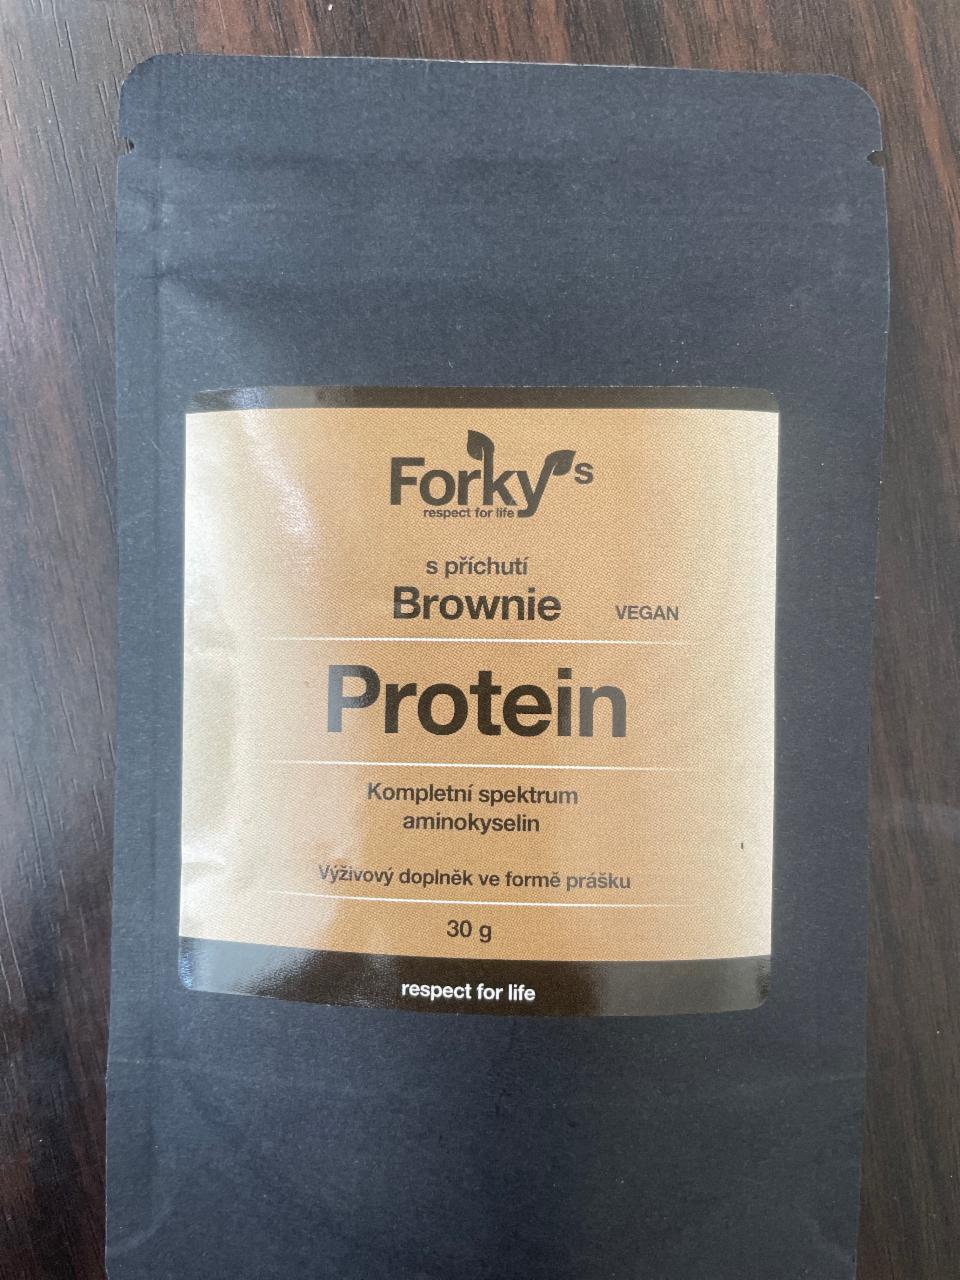 Fotografie - Protein s příchutí brownie vegan Forky’s